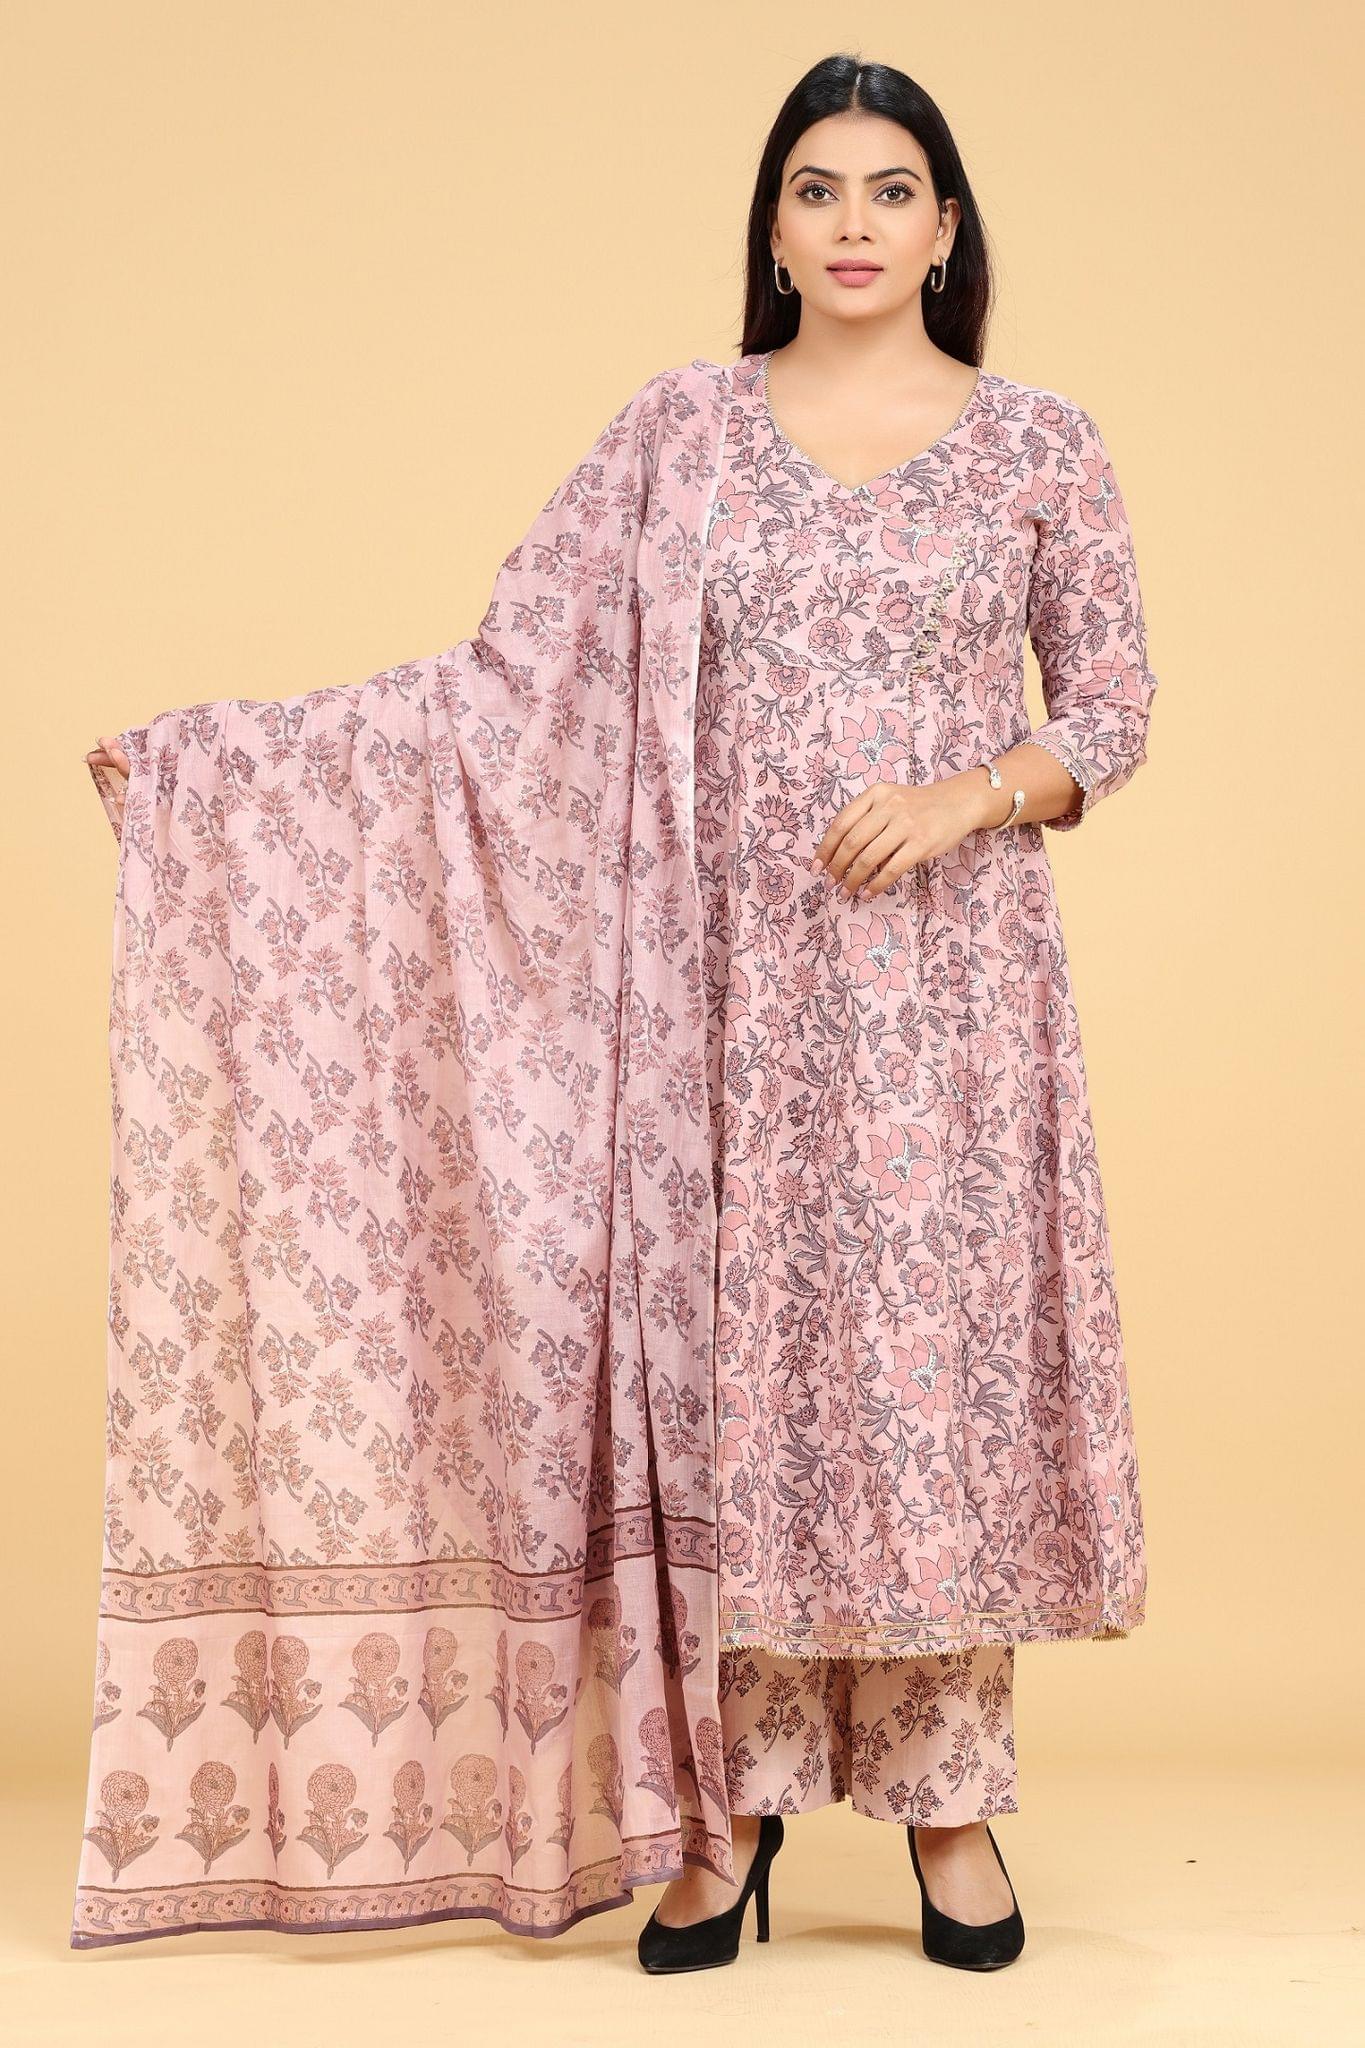 Harshali Light Purple Jaipuri Cotton Suit Sets